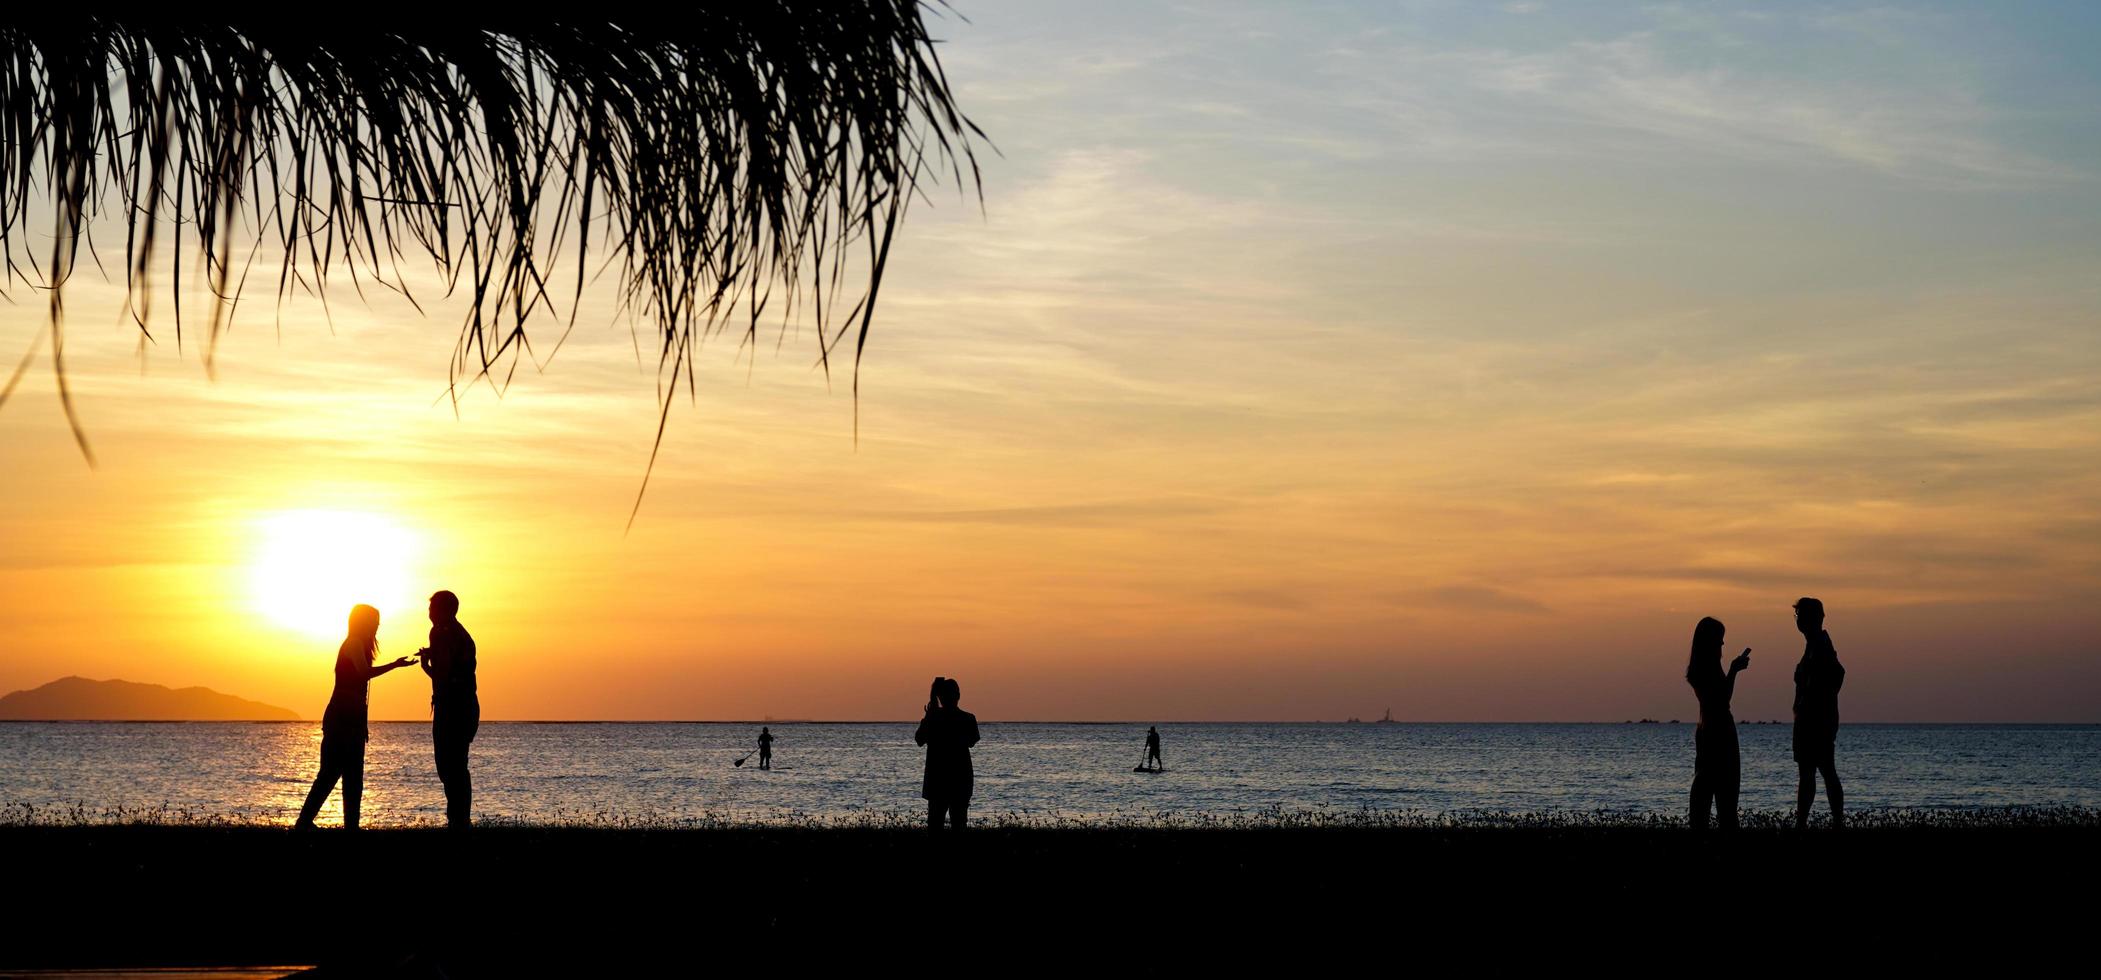 chonburi, thailand 2021 - menschensilhouette am strand sunet foto